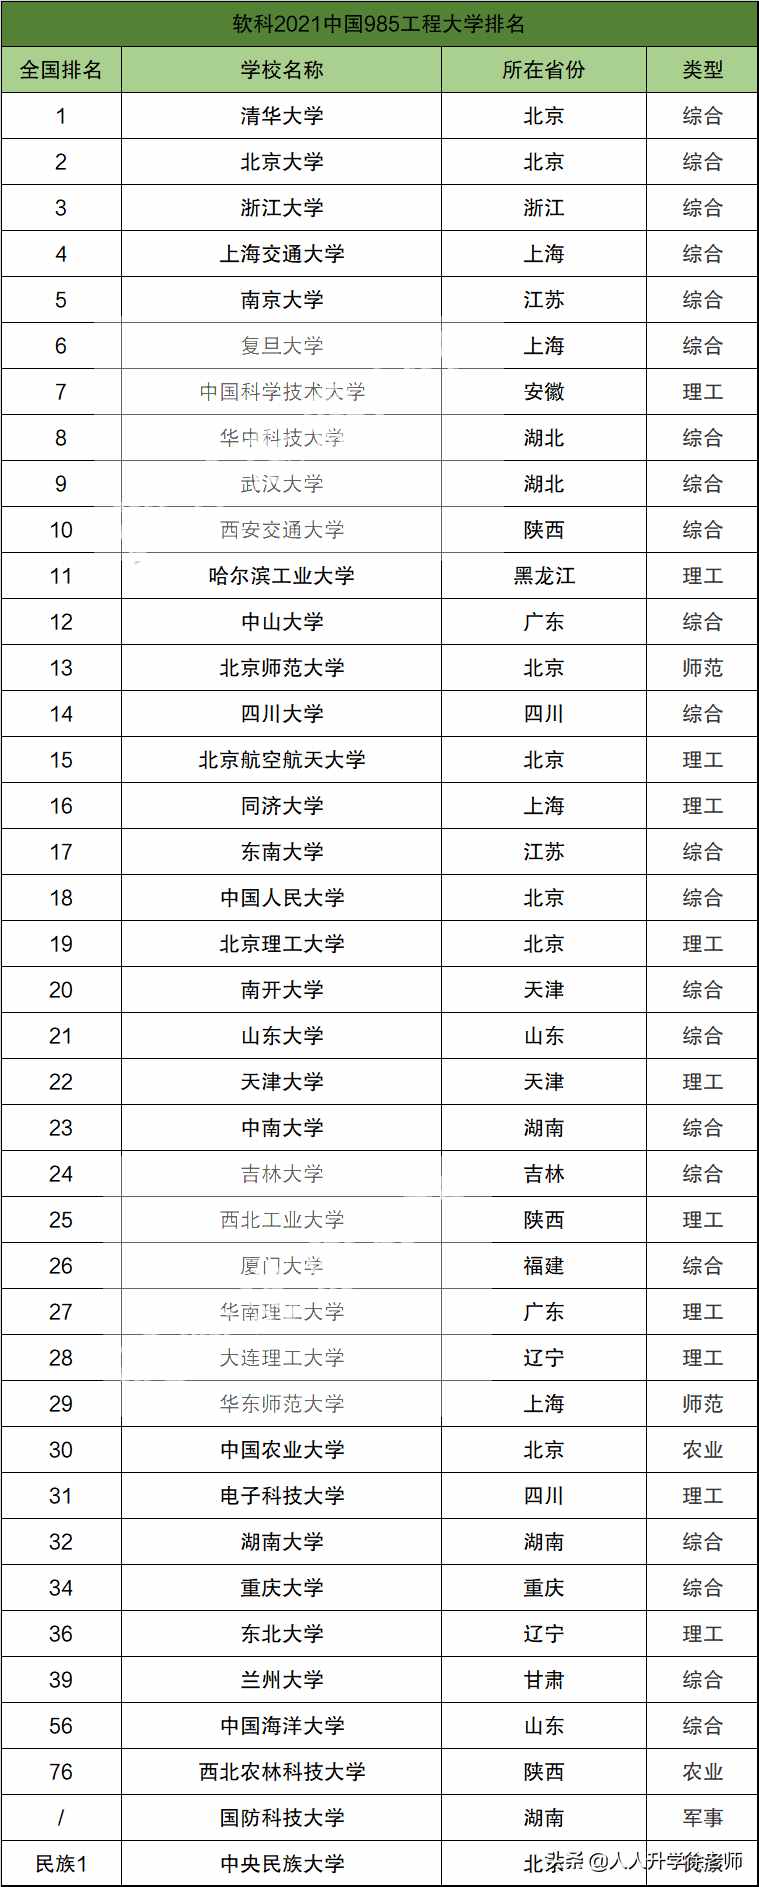 2021年中国985大学排名一览表